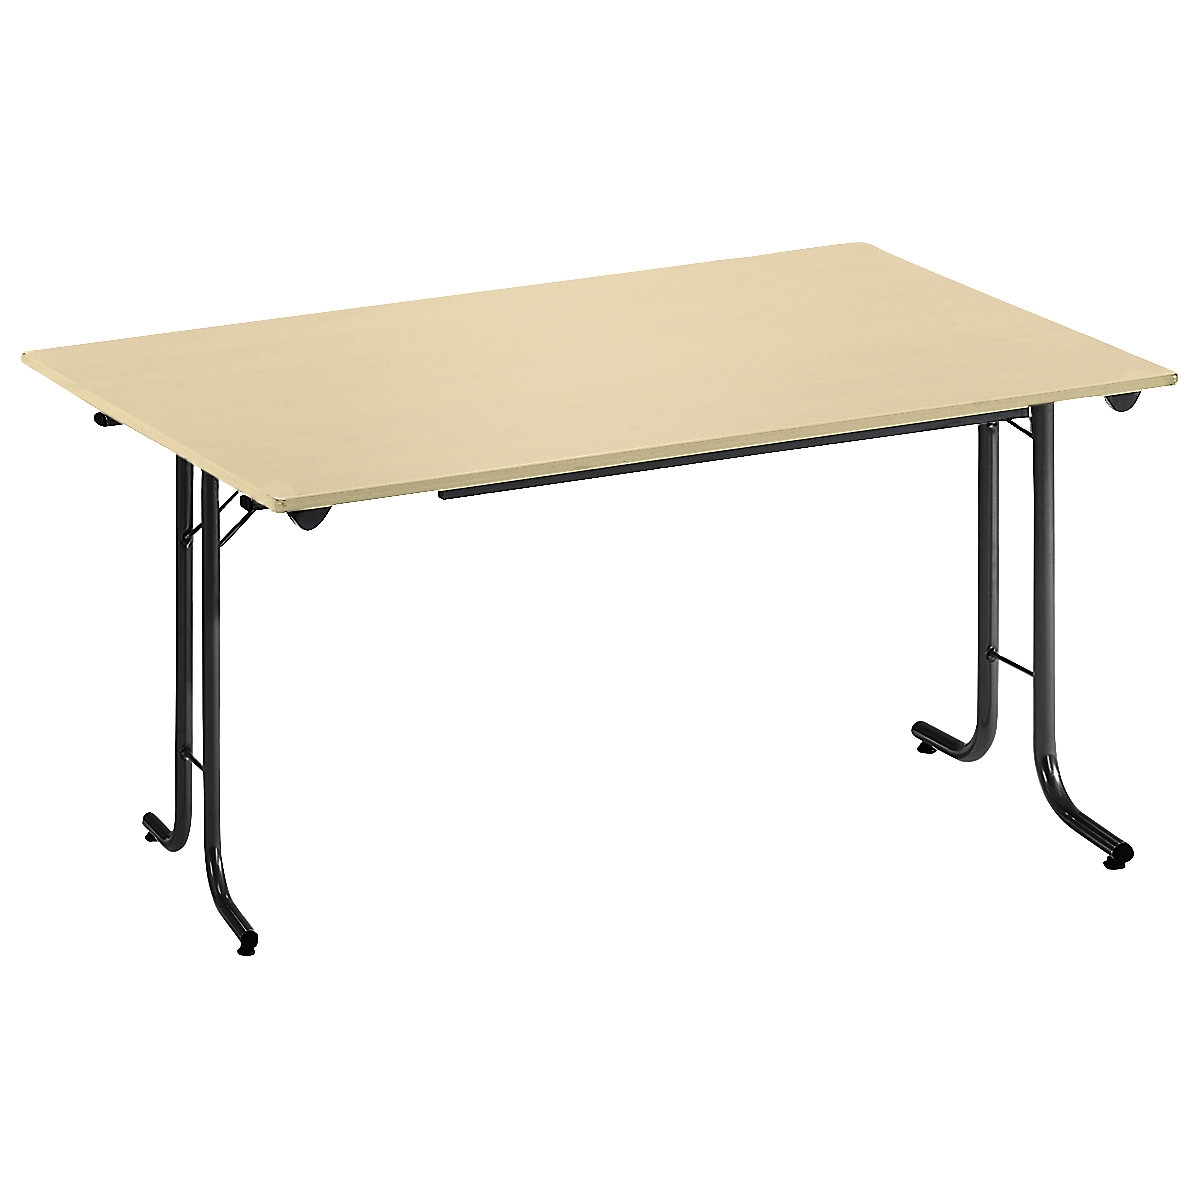 Sklápací stôl, so zaoblenými hranami, podstavec z kruhovej rúrky, tvar dosky obdĺžnikový, 1200 x 700 mm, podstavec čierna, doska vzor javor-9